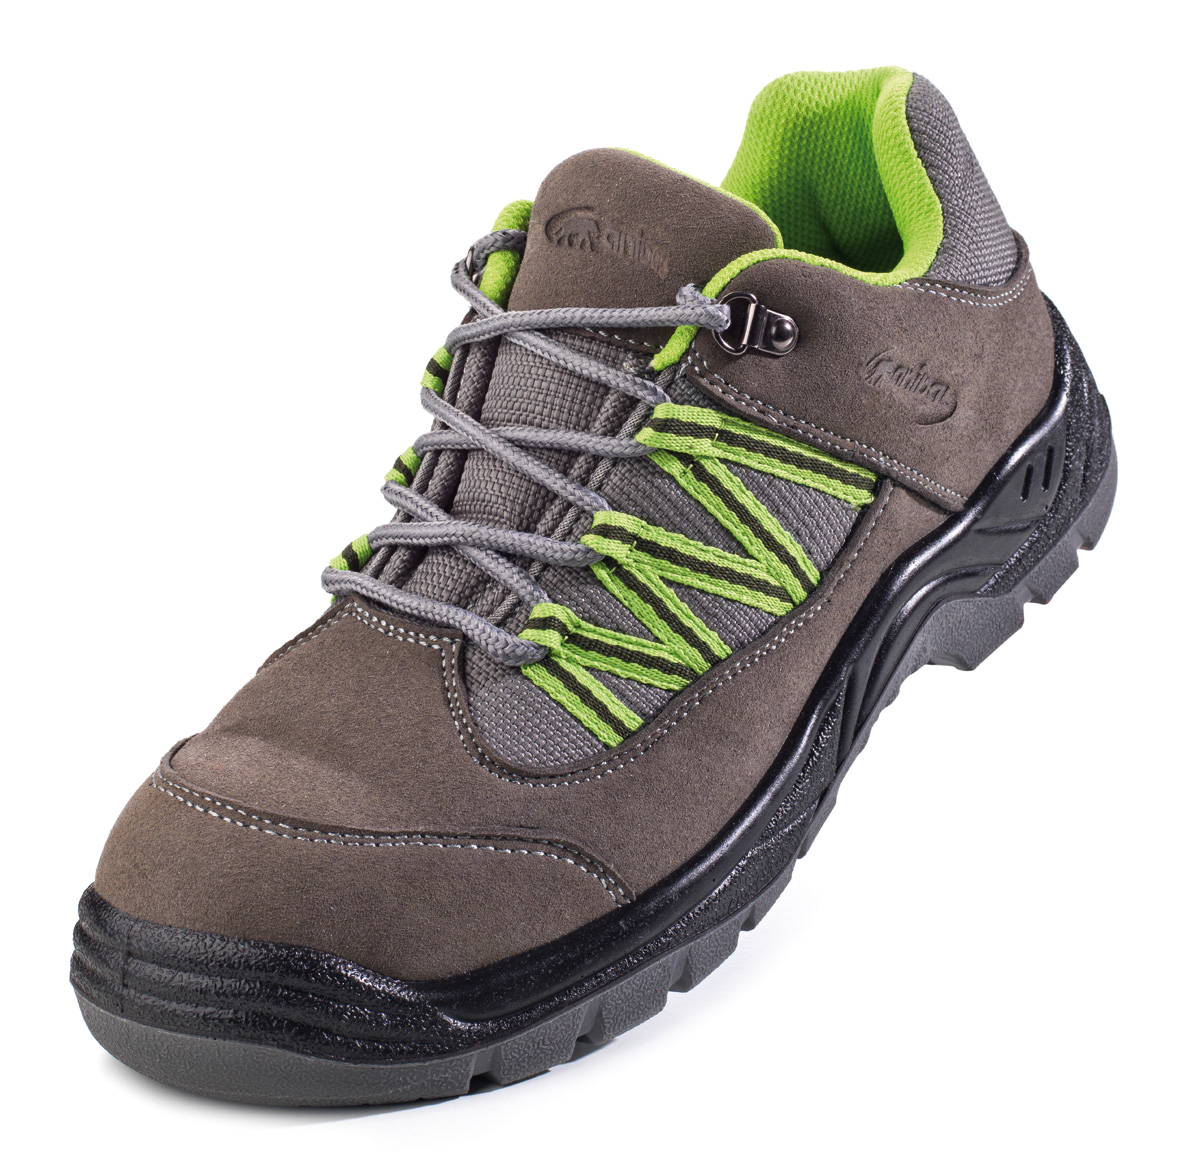 1688-ZAG Calzado de Seguridad Sporty Trekking  Zapato mod. “GARUM”.
Zapato tipo Trekking sin protección en microfibra afelpada suela Poliuretano doble densidad SRC.